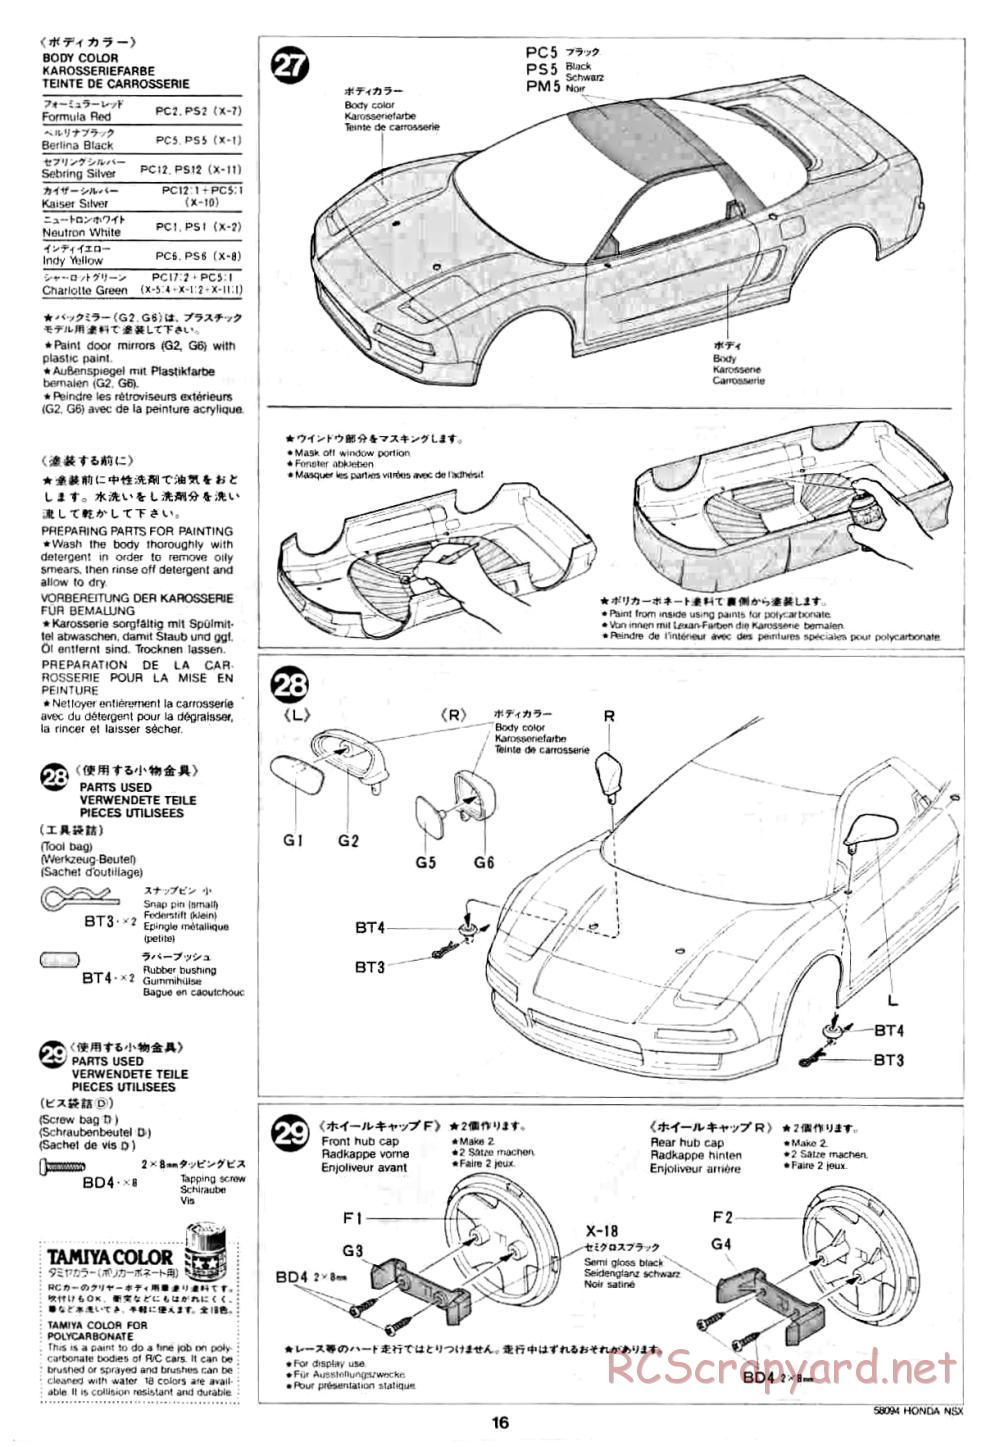 Tamiya - Honda NSX - 58094 - Manual - Page 16